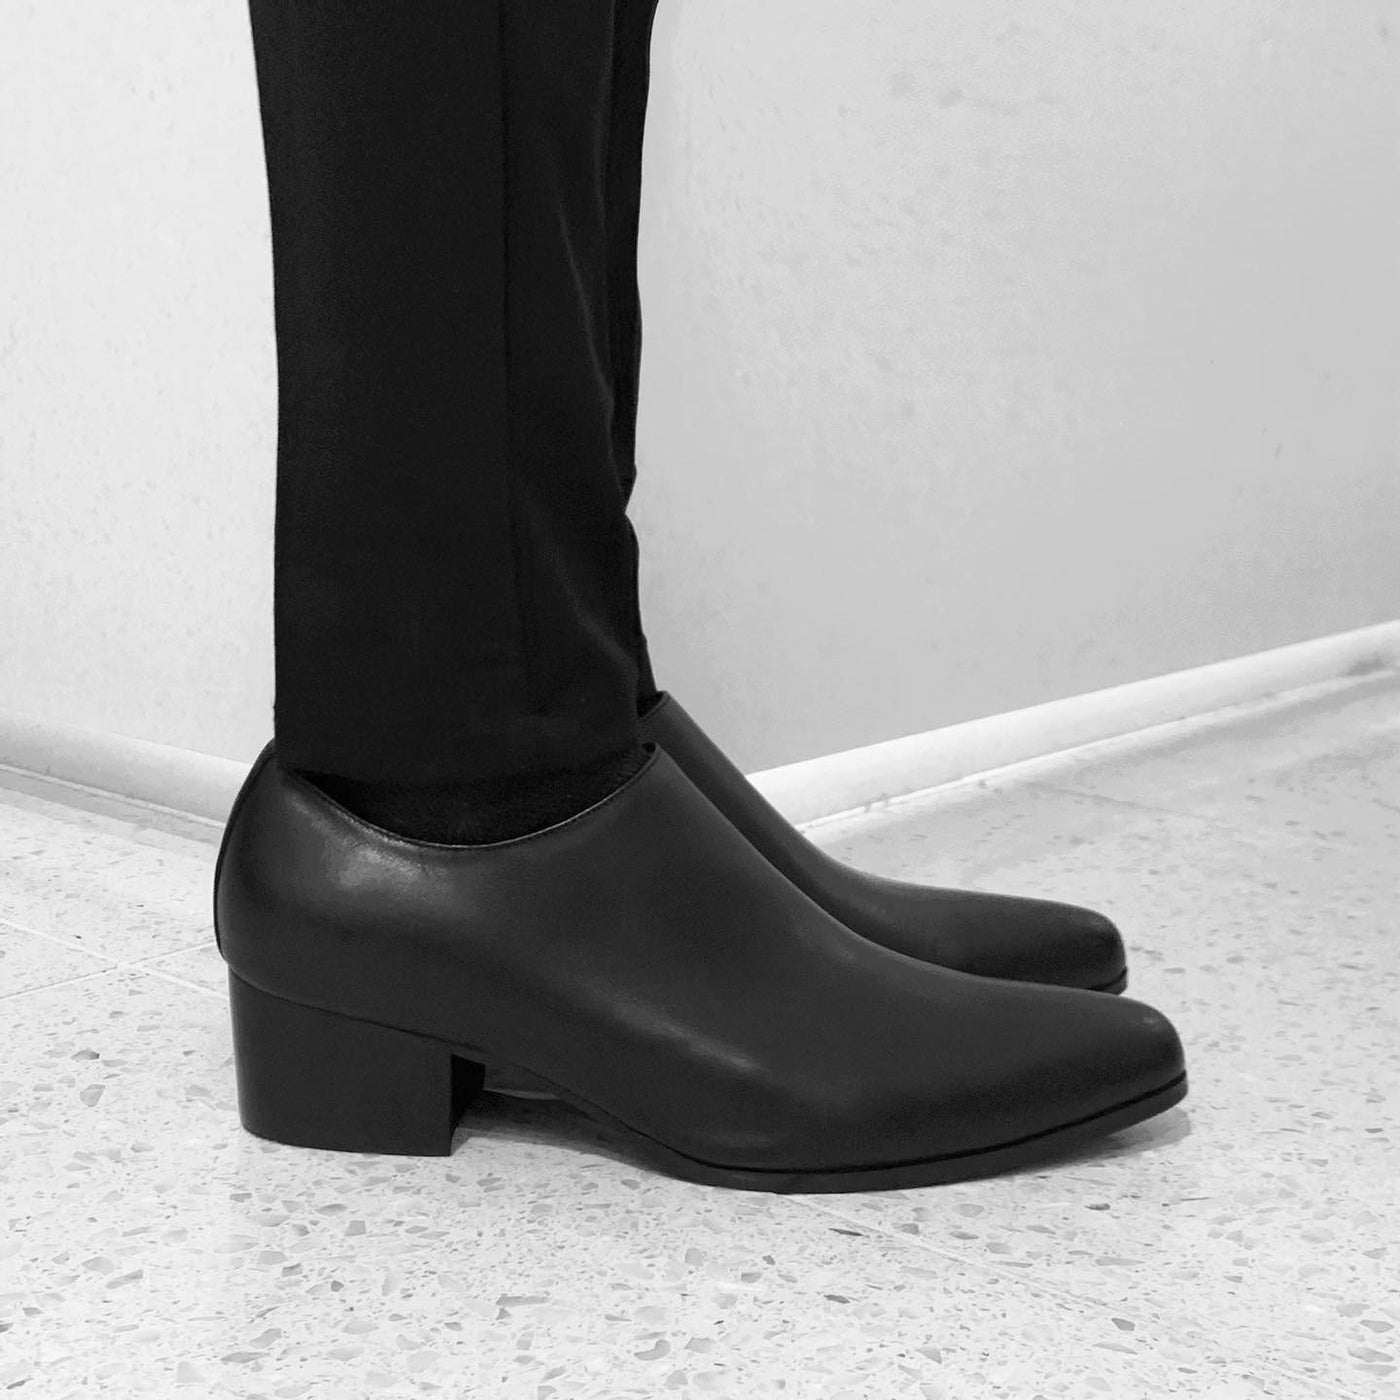 【即納】Side-zip leather shoes "Basic"